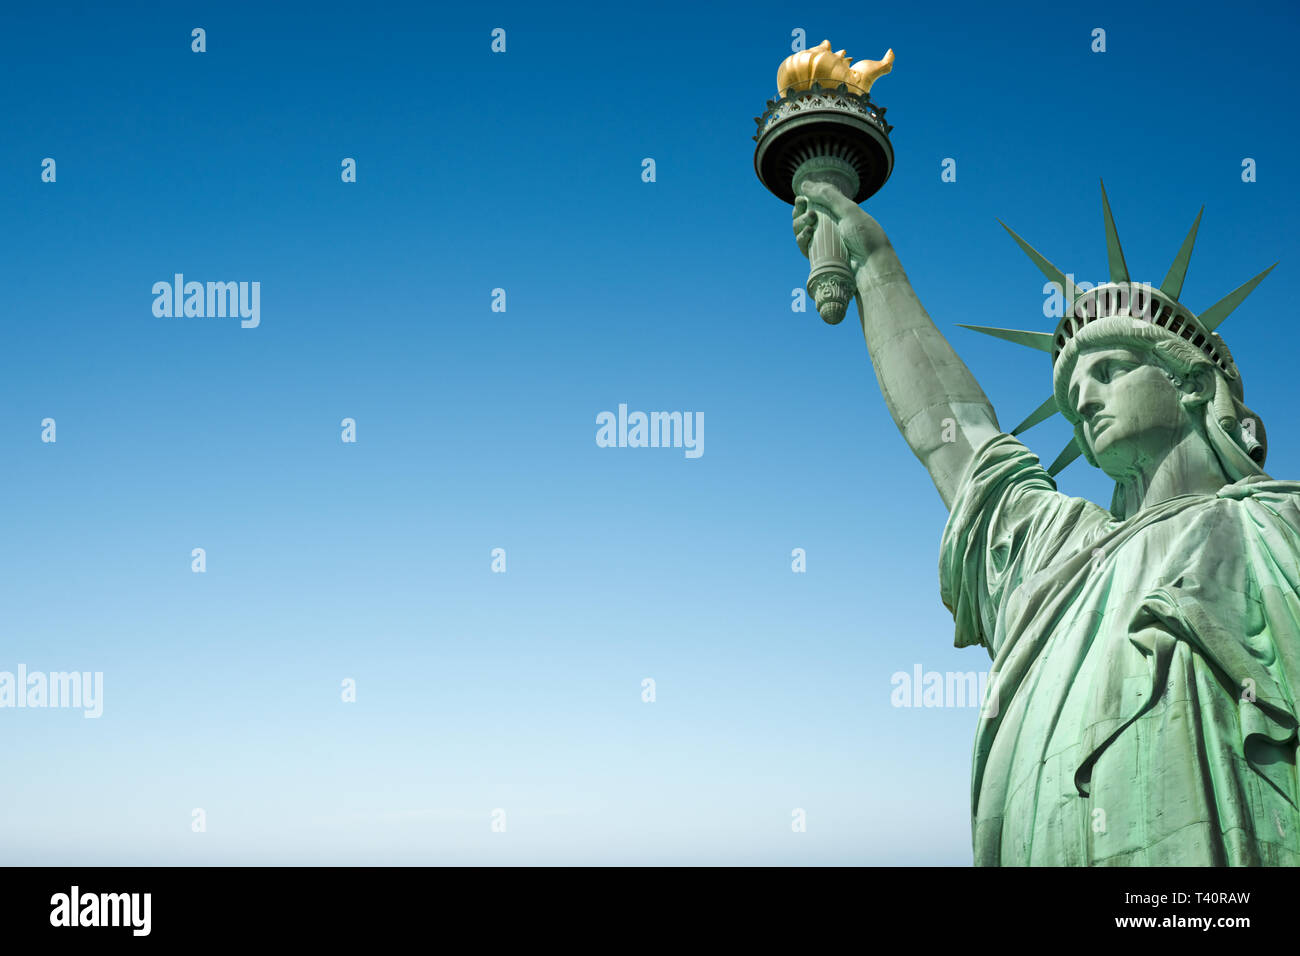 Près de la Statue de la Liberté à New York, USA. Blue sky background with copy space Banque D'Images